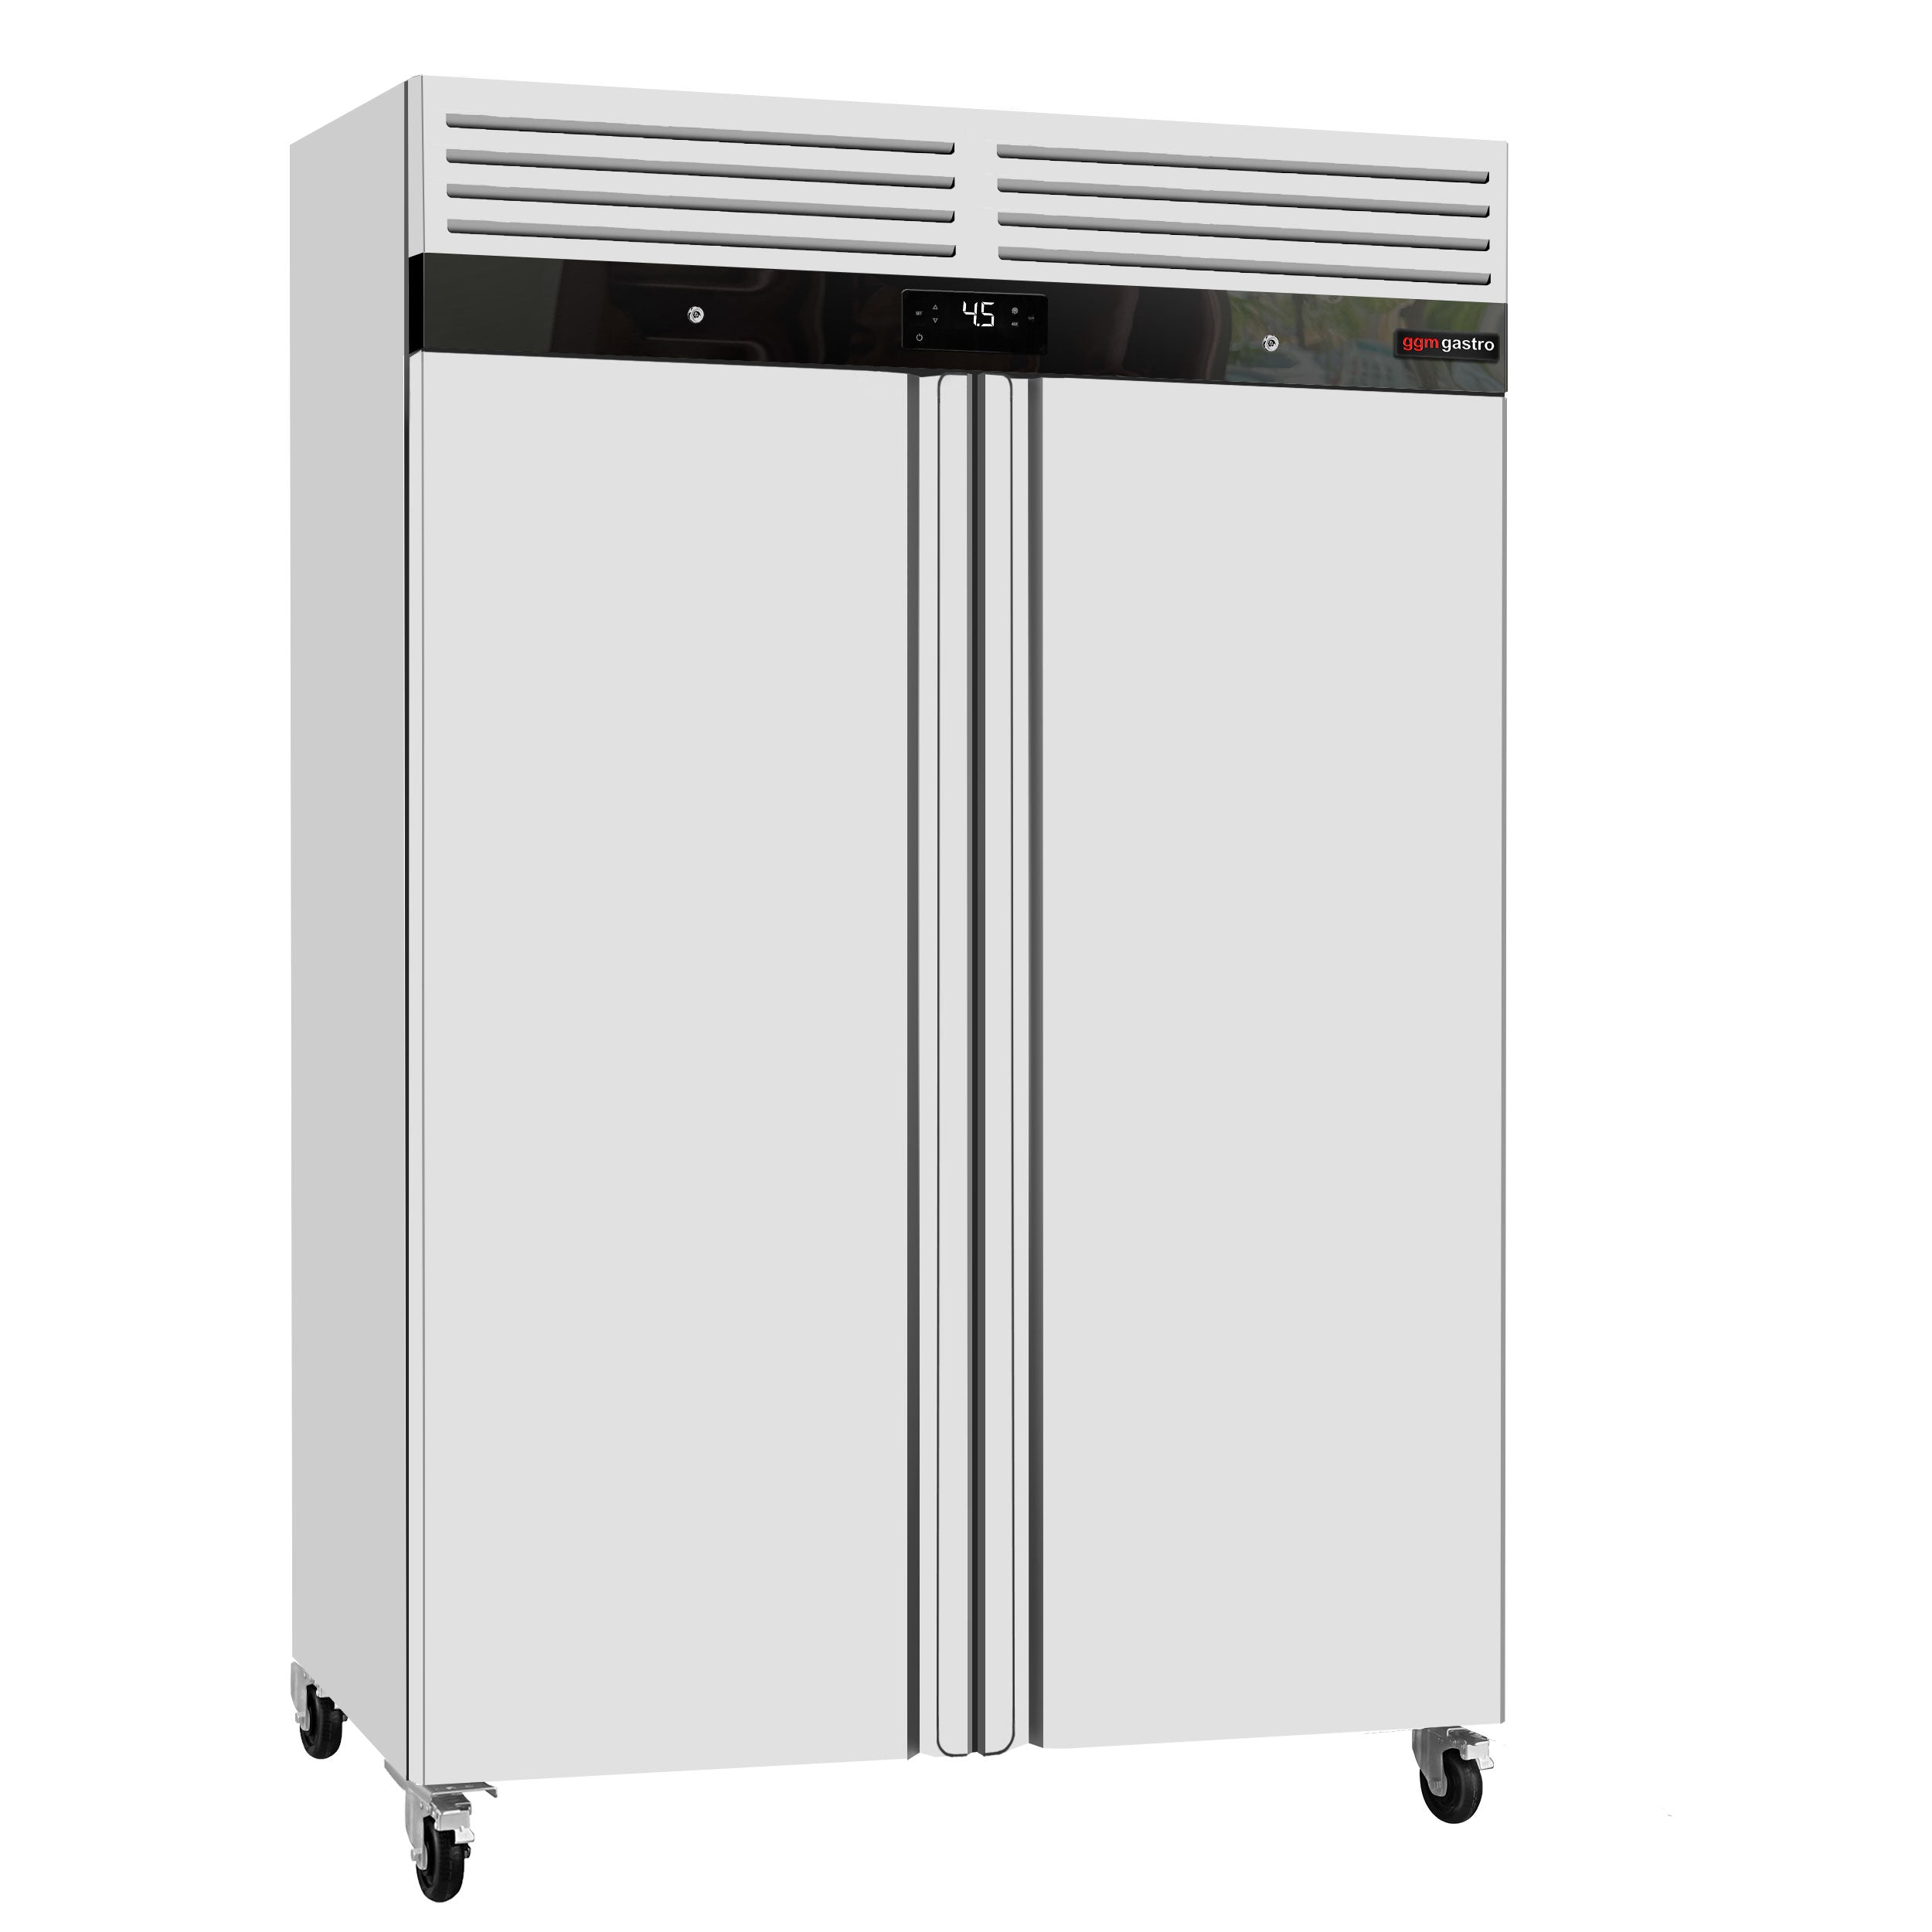 Refrigerator ECO - GN 2/1 - 1340 liters - 2 doors